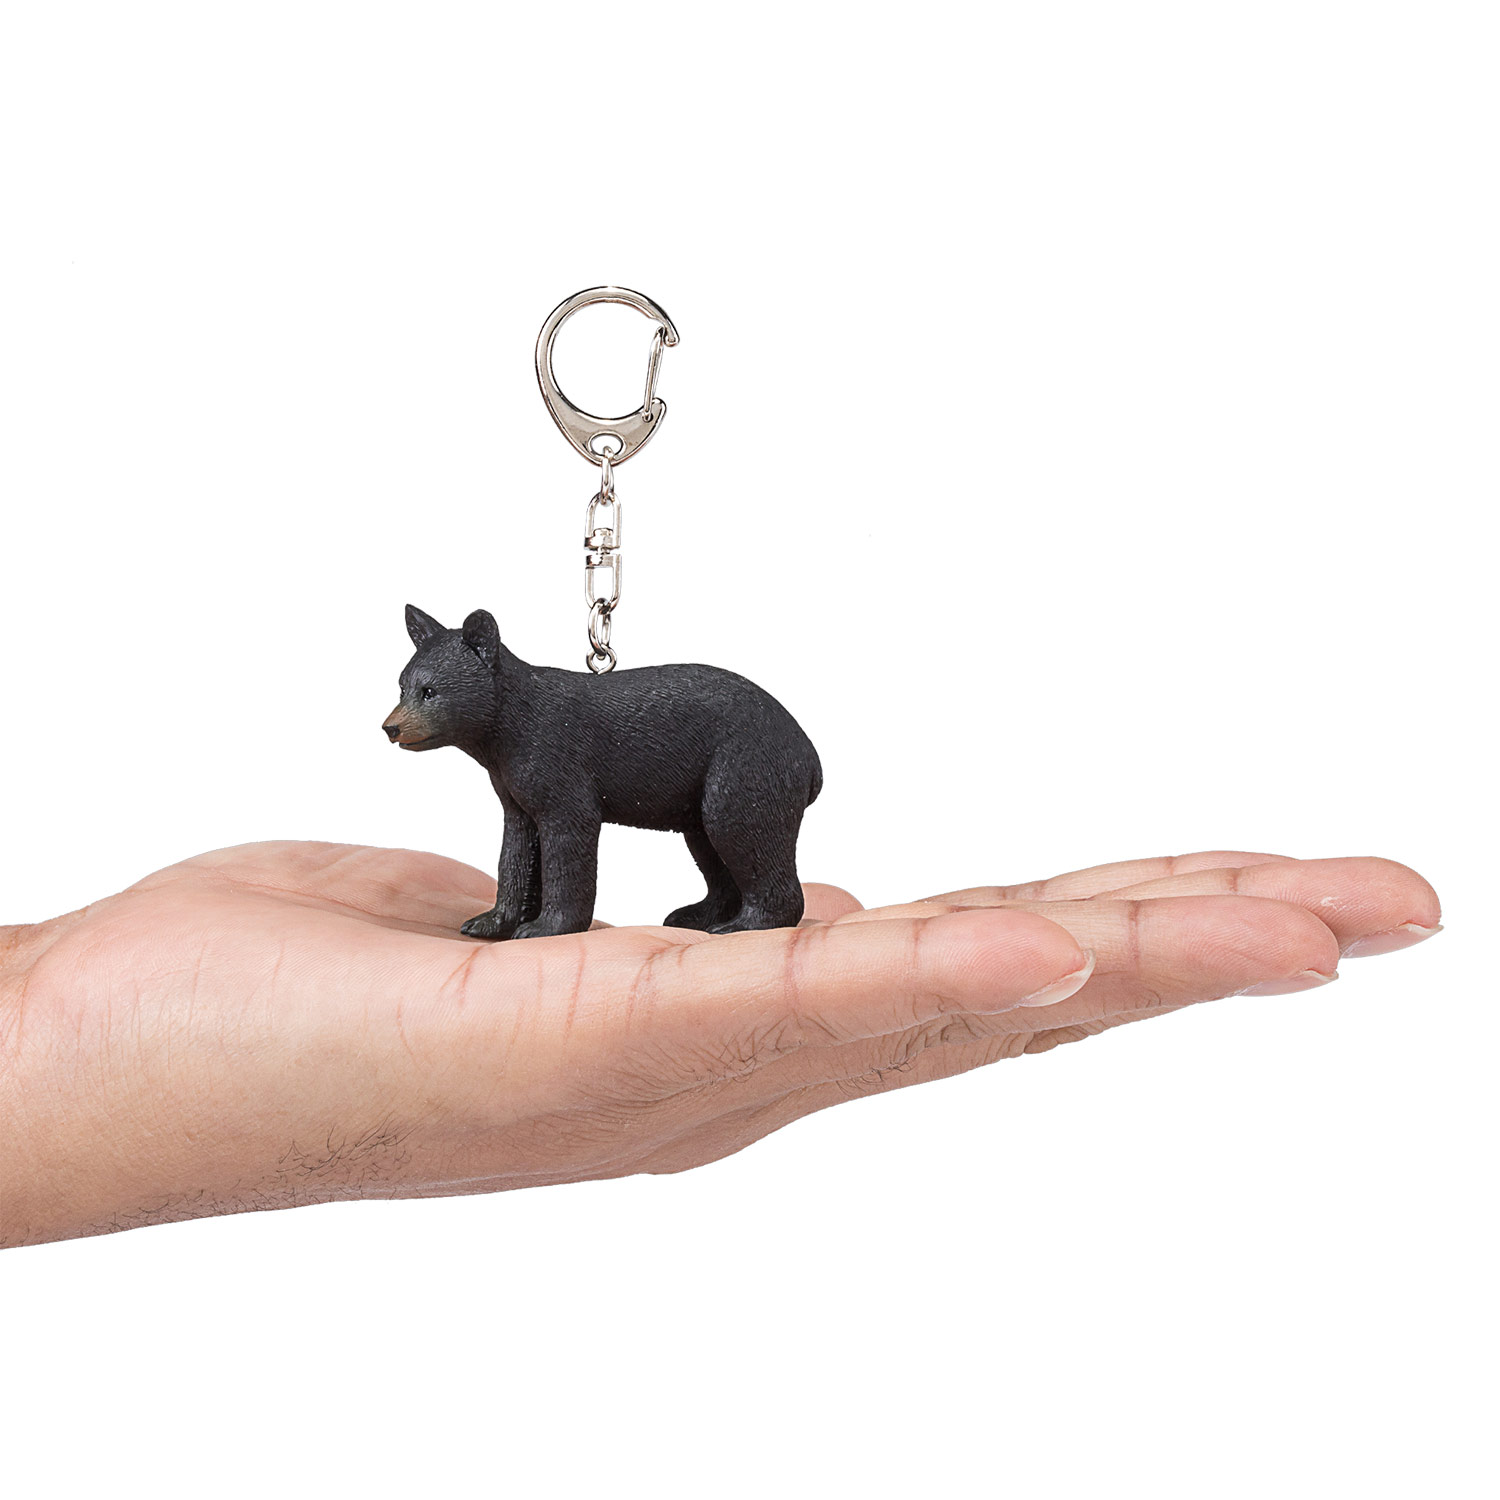 Mojo Schlüsselanhänger Black Bear Cub - 387438